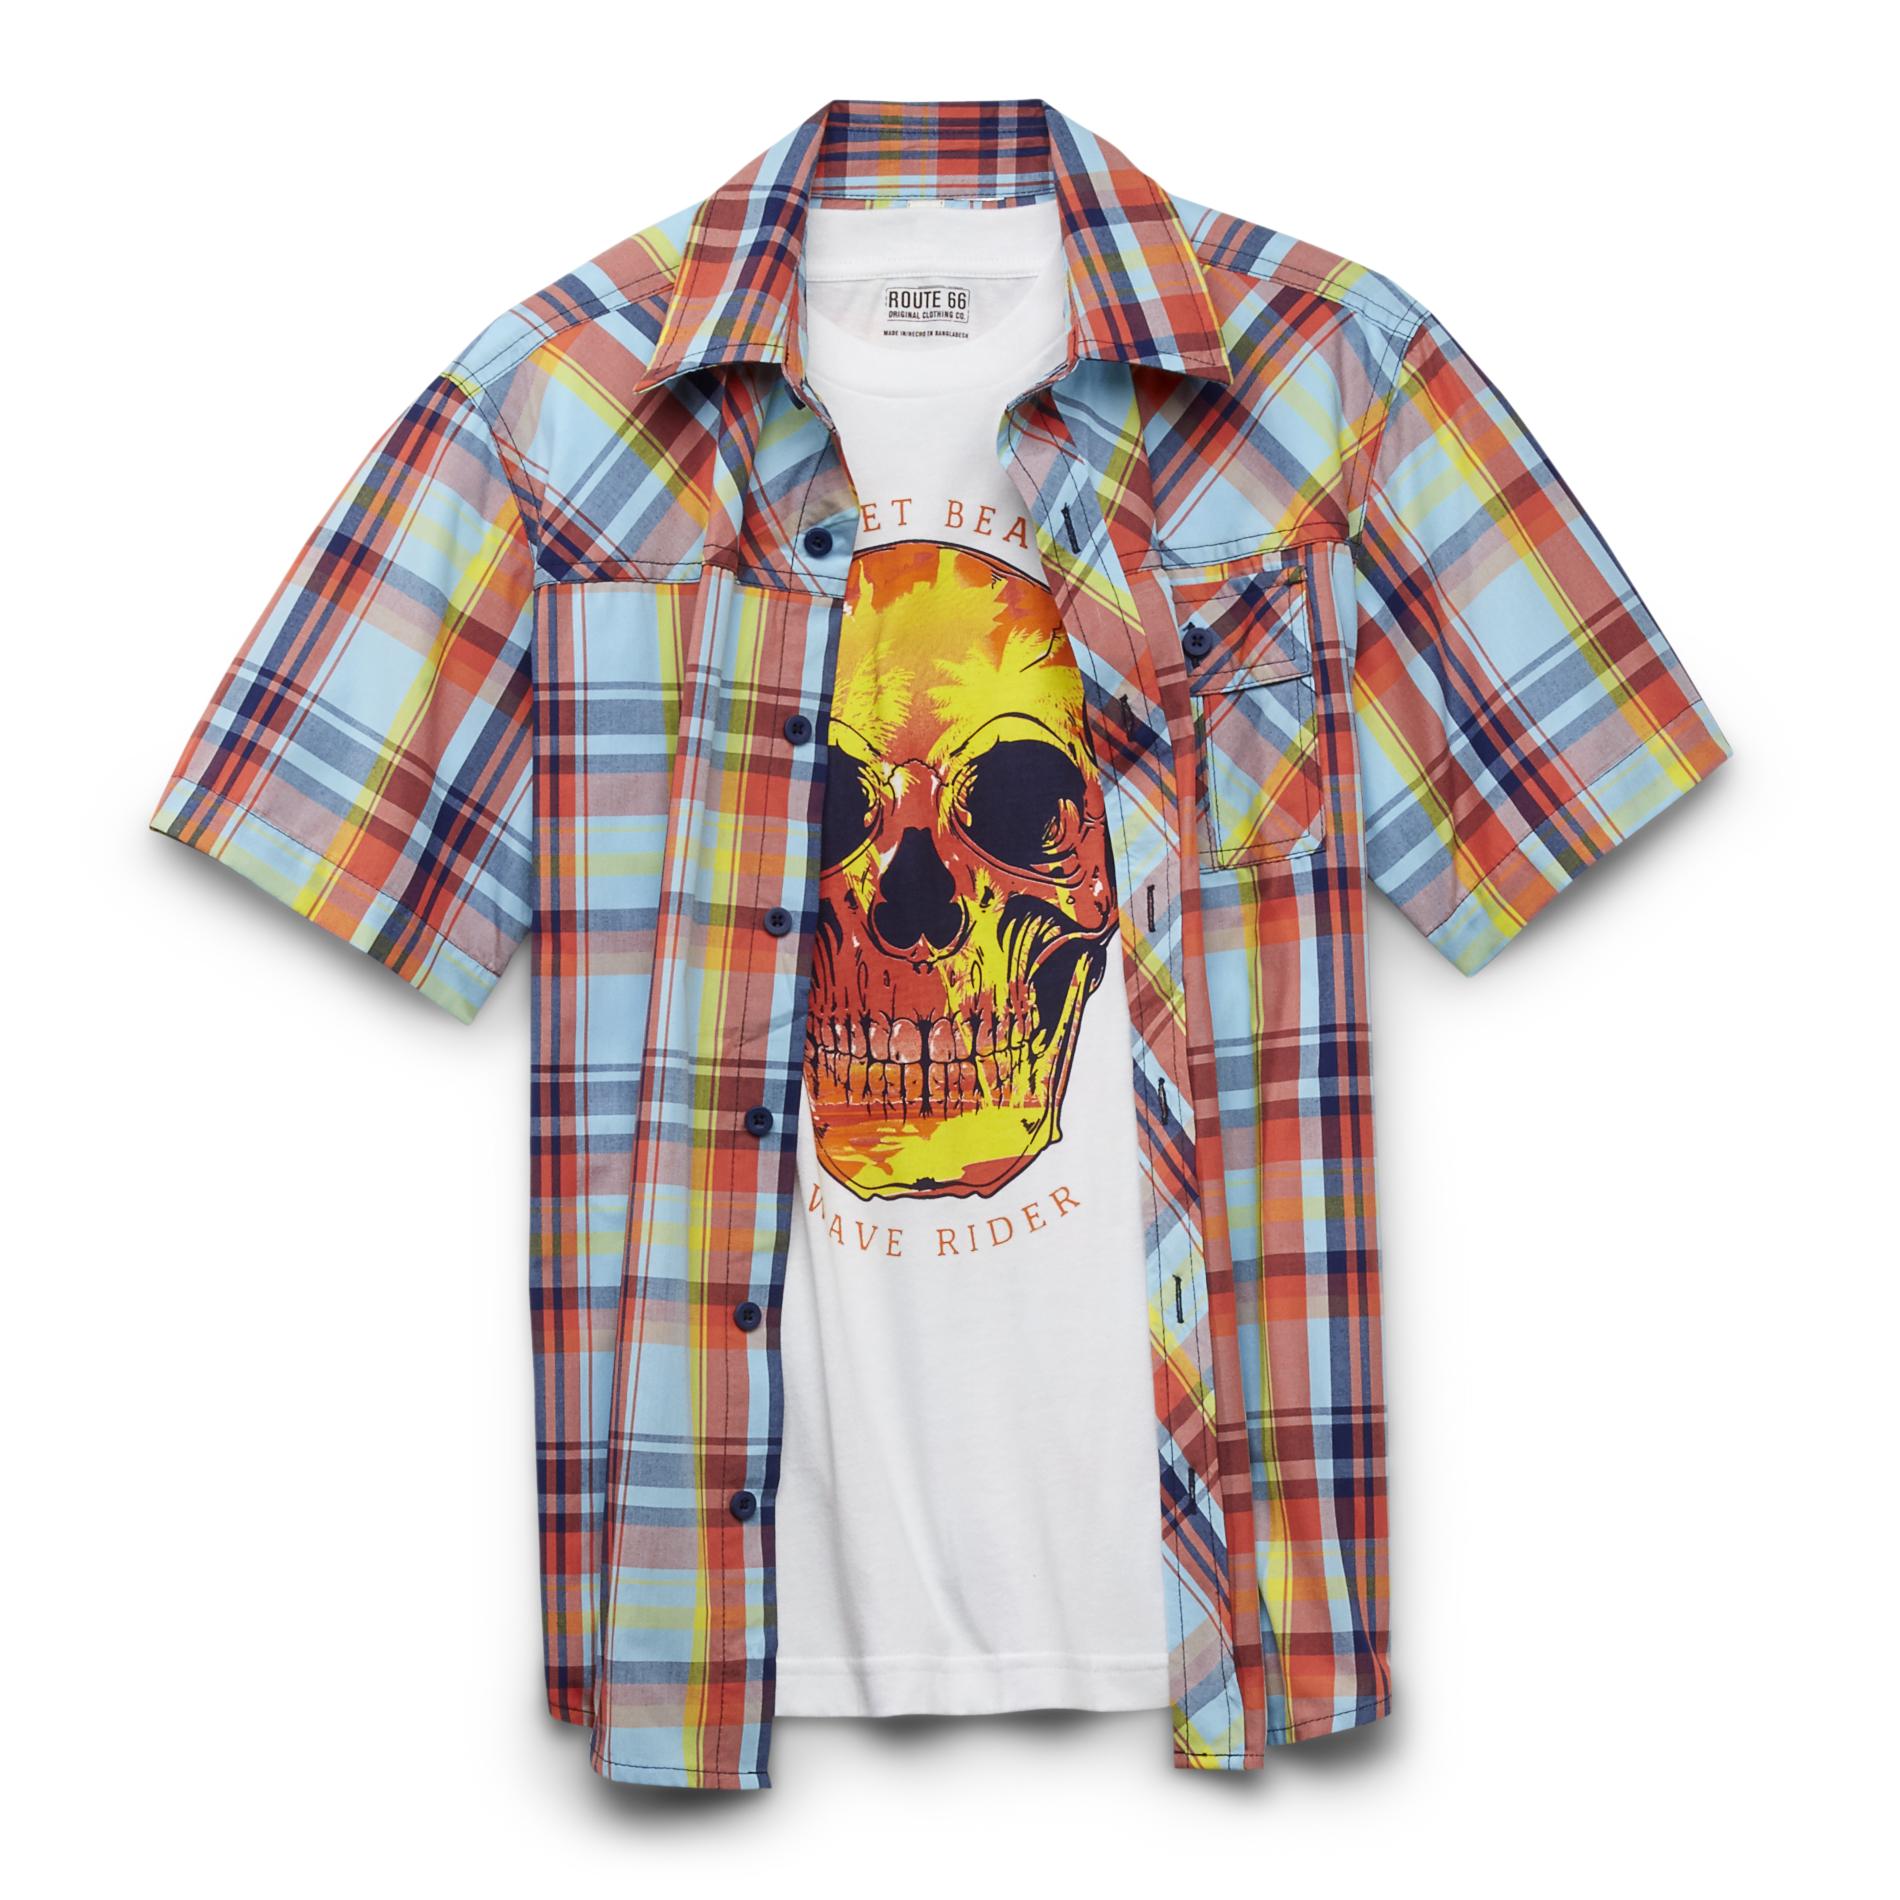 Route 66 Boy's Woven Shirt & T-Shirt - Sunset Beach Wave Rider